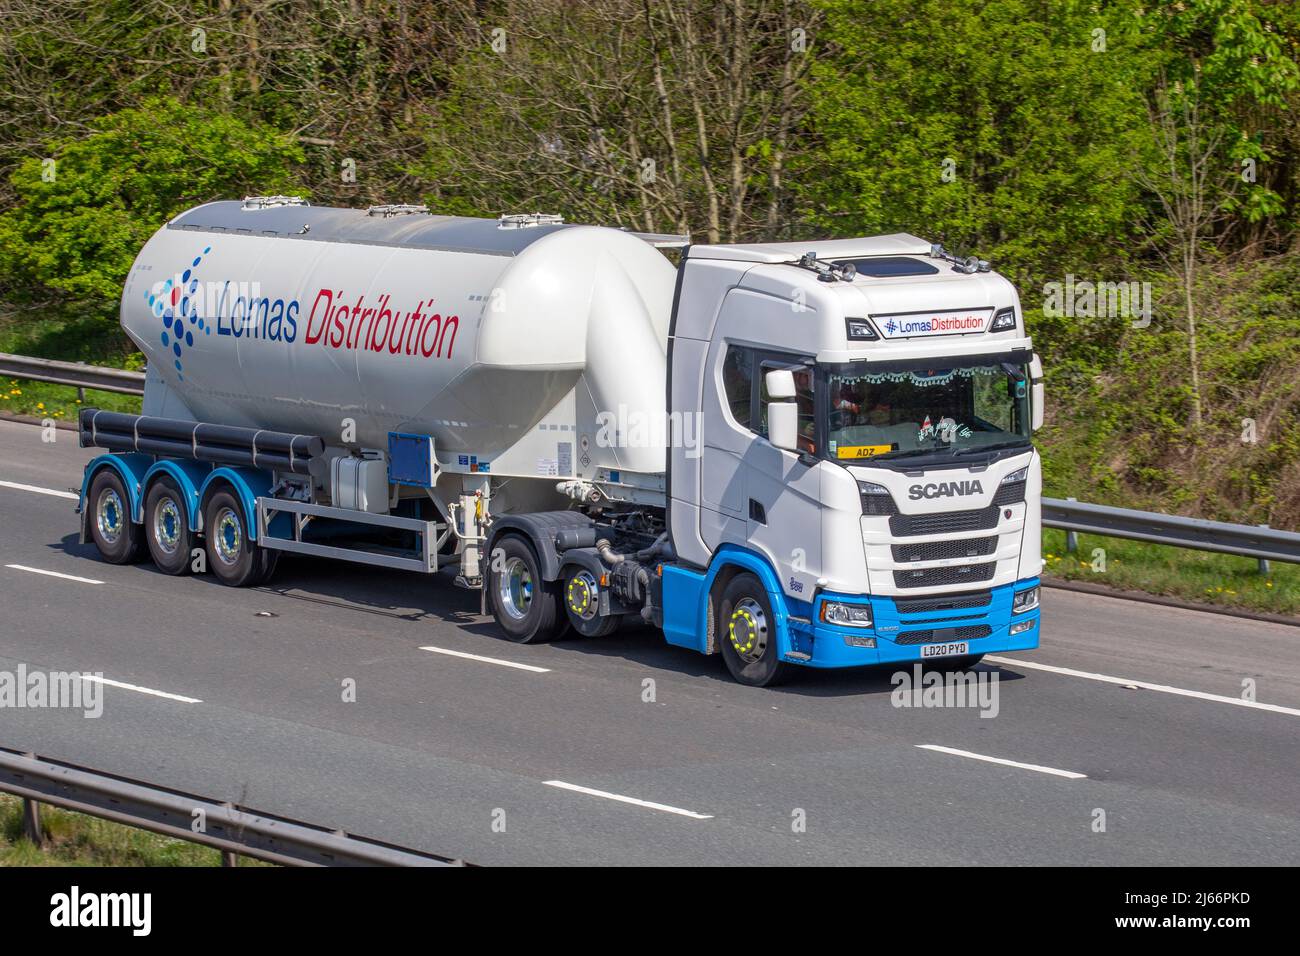 ADZ zum Fahrer von Lomas Distribution ernannt, Tanker Betreiber des Jahres: Scania 12742cc Truck auf der M61 Motorway UK Stockfoto